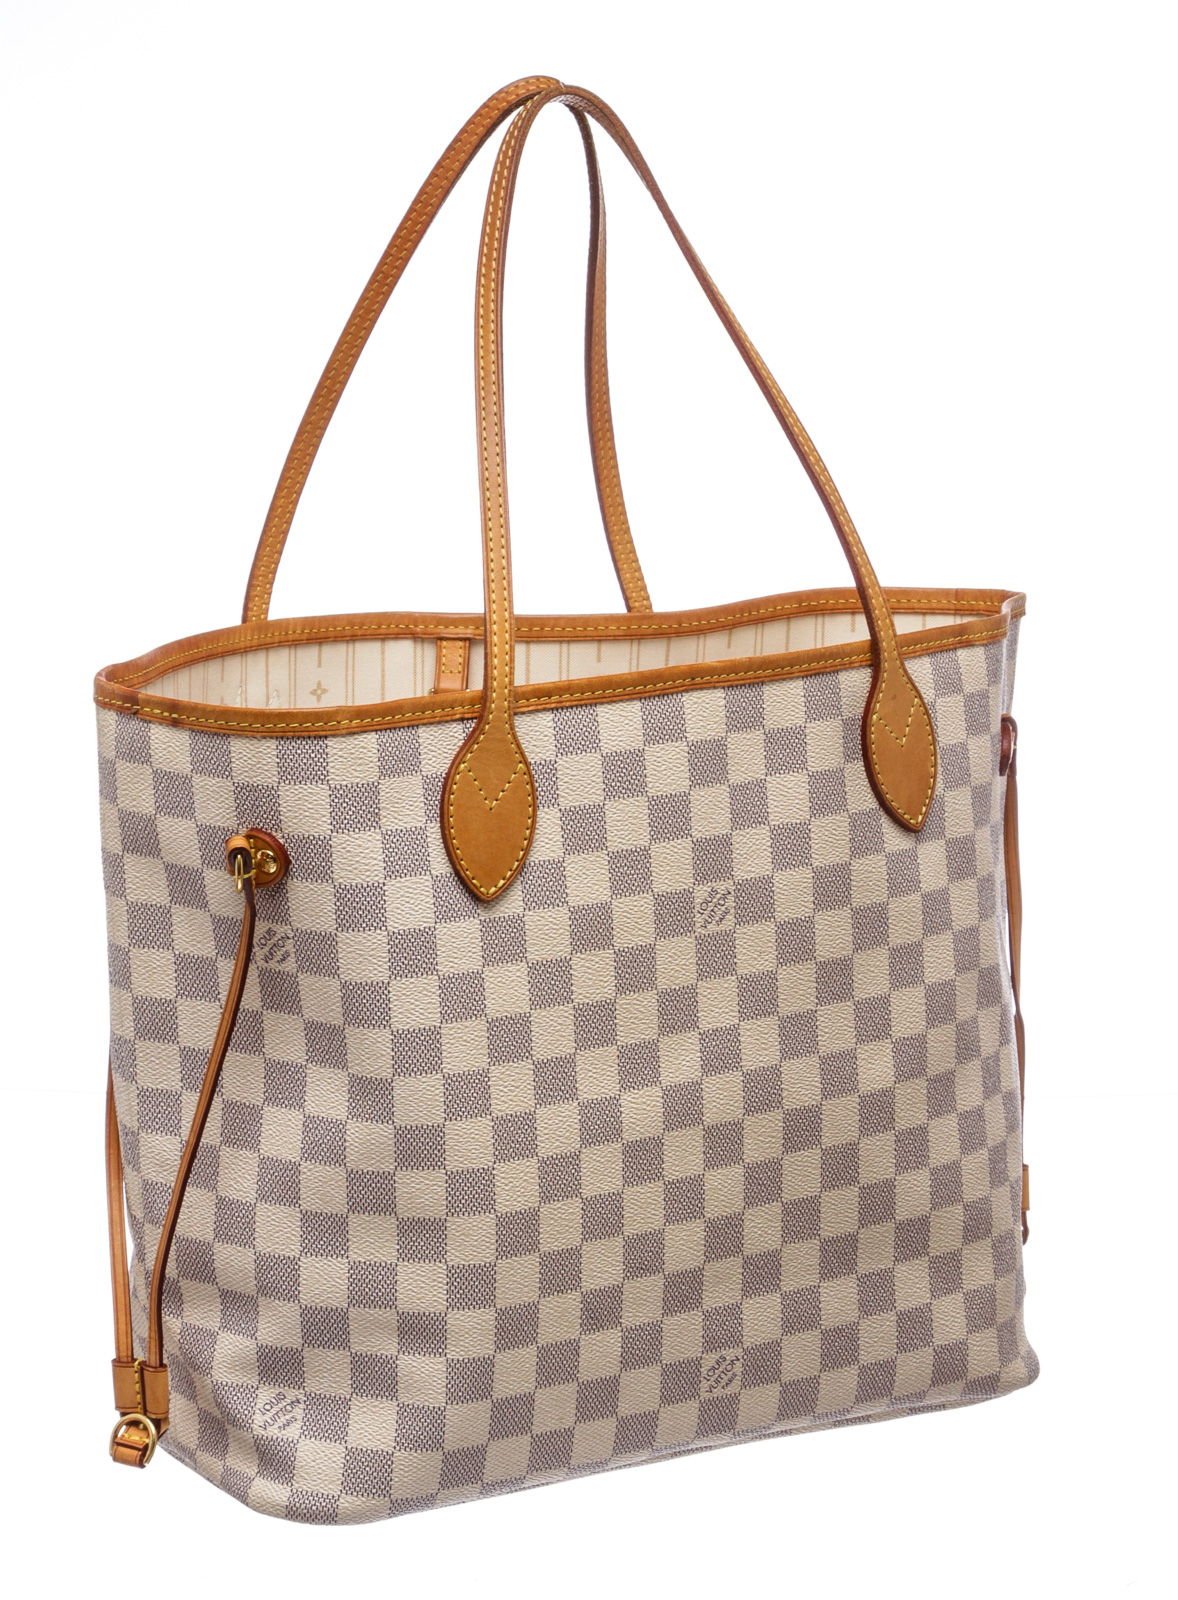 Authentic Louis Vuitton Damier Azur Neverfull MM Canvas Shoulder Hand Bag | eBay